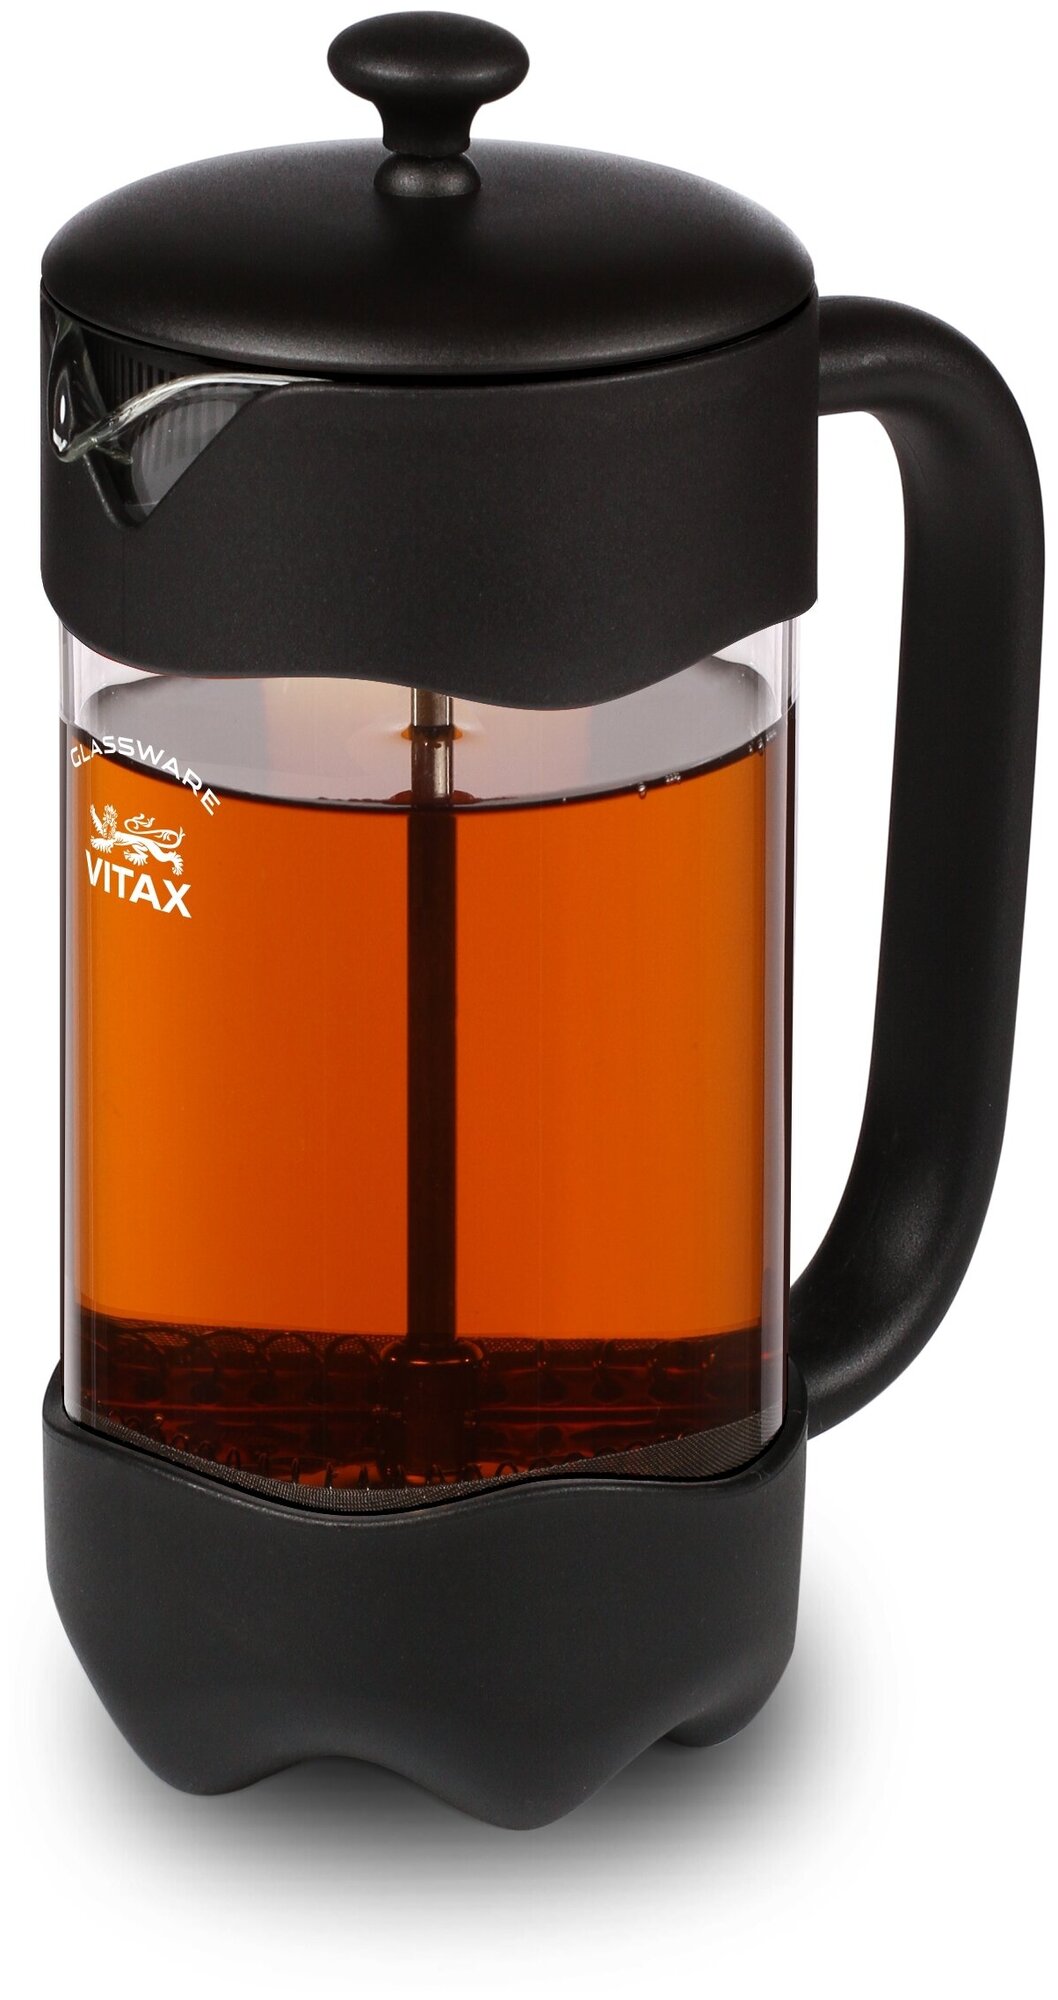 Френч-пресс, заварочный чайник объемом 1 литр для заваривания чая и приготовления напитков из молотого кофе.